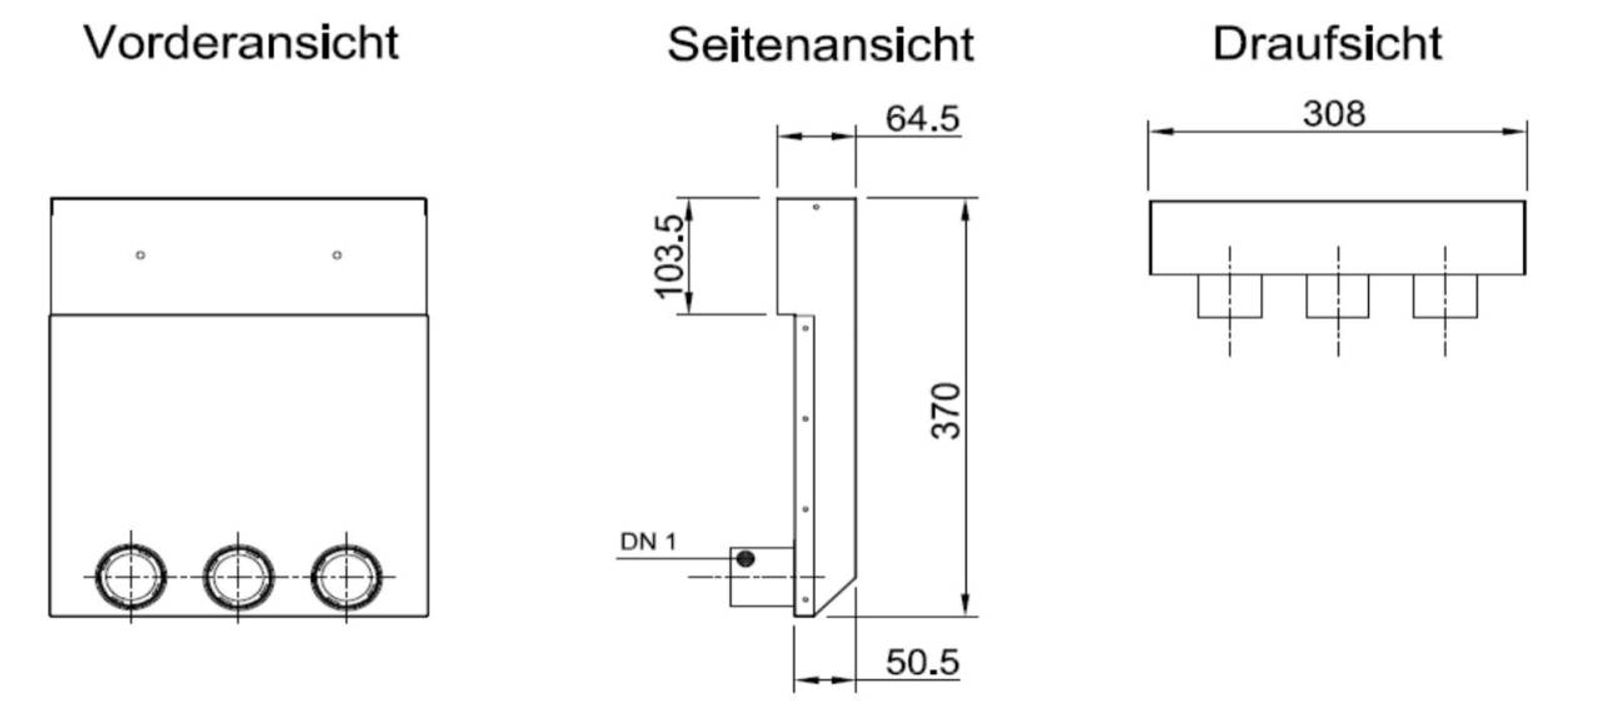 Luftanschlusskasten zur Montage der Zu- und Abluftgitter 3 Abgänge  Ø 50 mm  Wand 305 mm x 102 mm x 460 mm